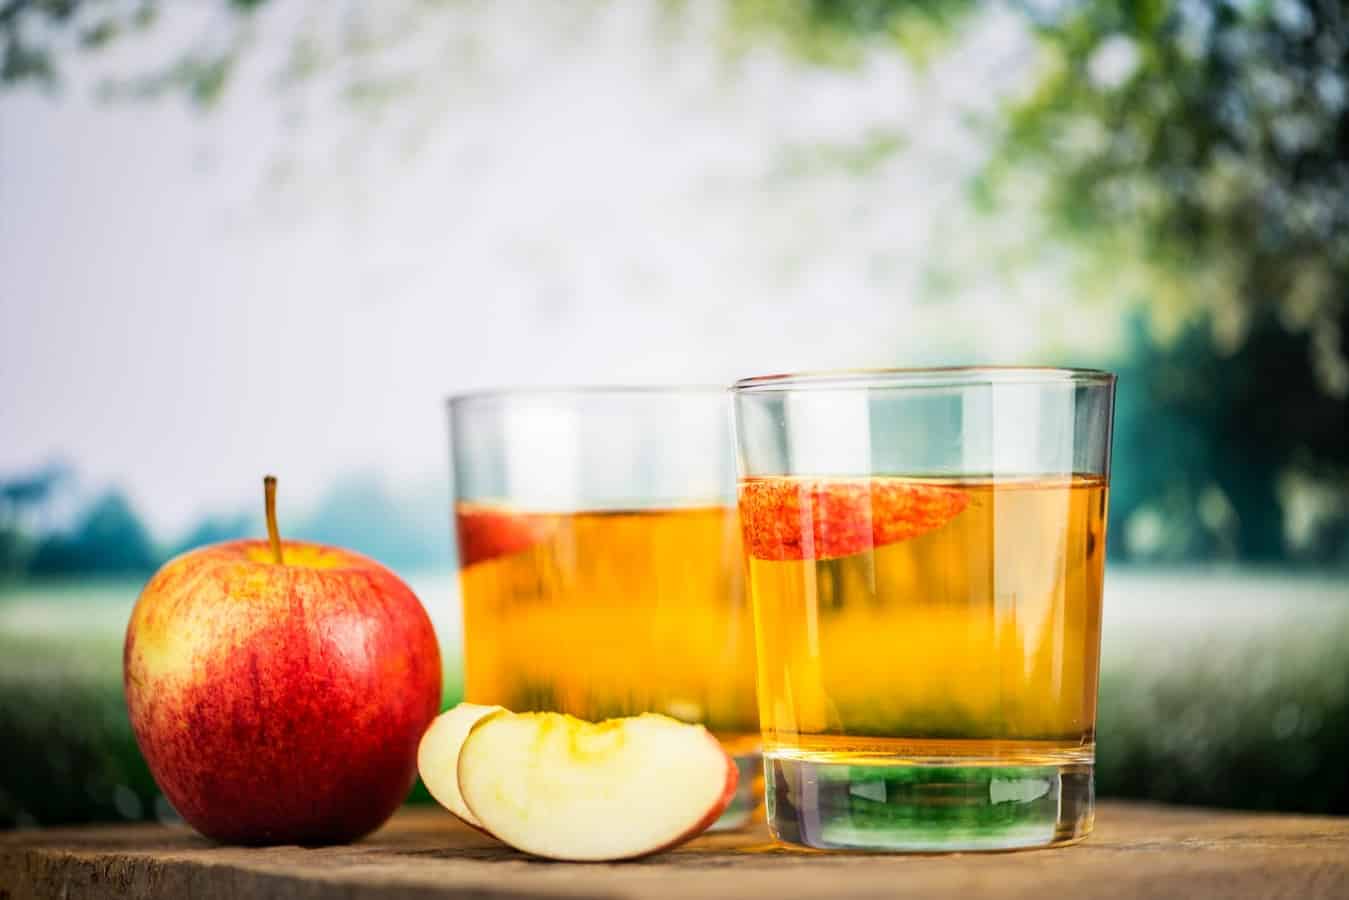 כוסות עם סיידר תפוחים על שולחן בטבע